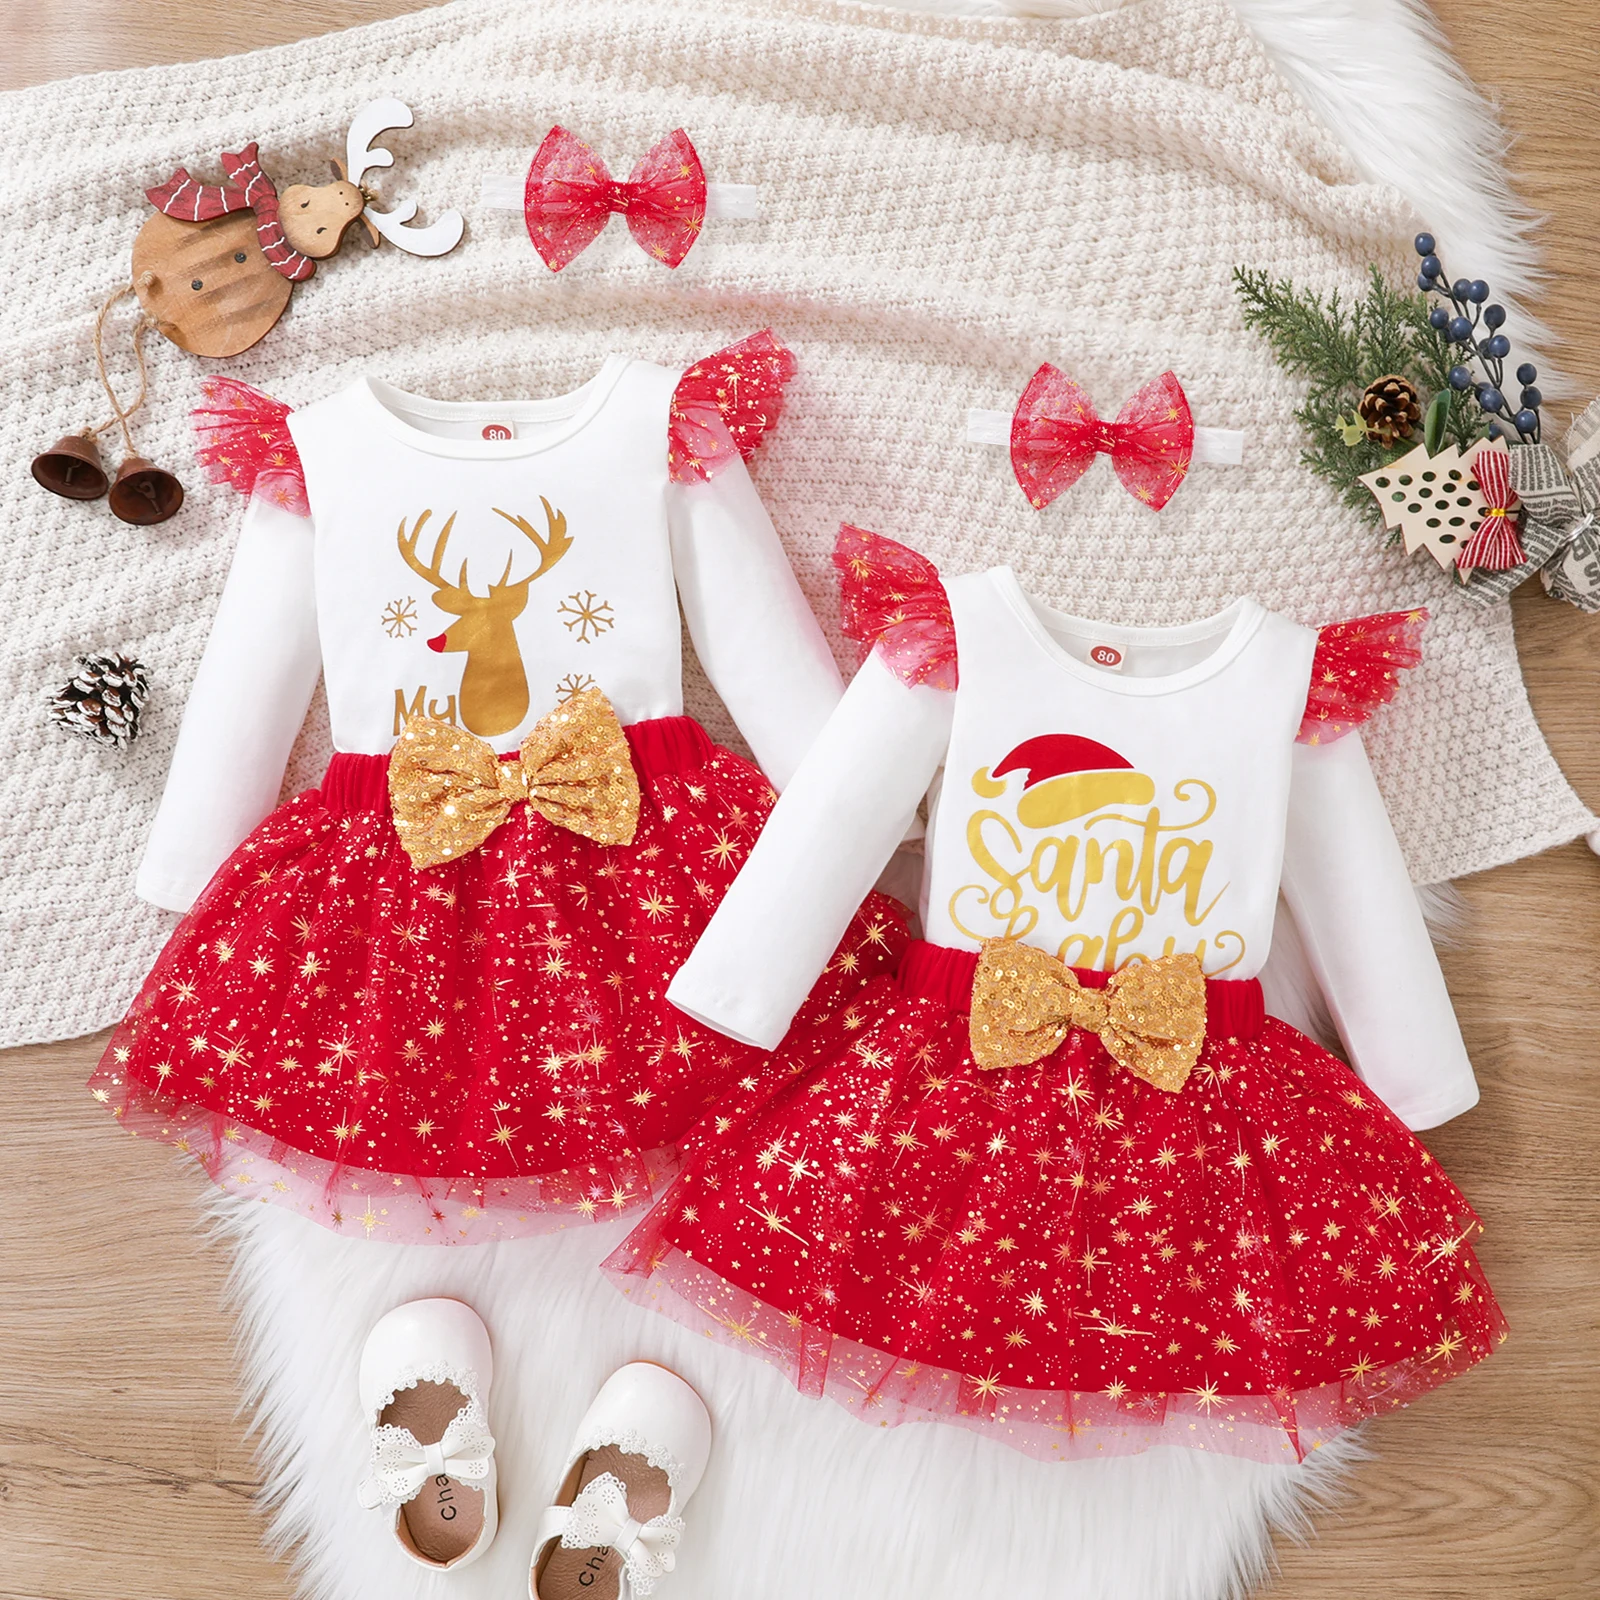 

Комплект одежды Lioraitiin для новорожденных девочек 0-18 месяцев, 2022-08-10, 3 предмета, комплект рождественской одежды, боди с длинным рукавом, топ, к...